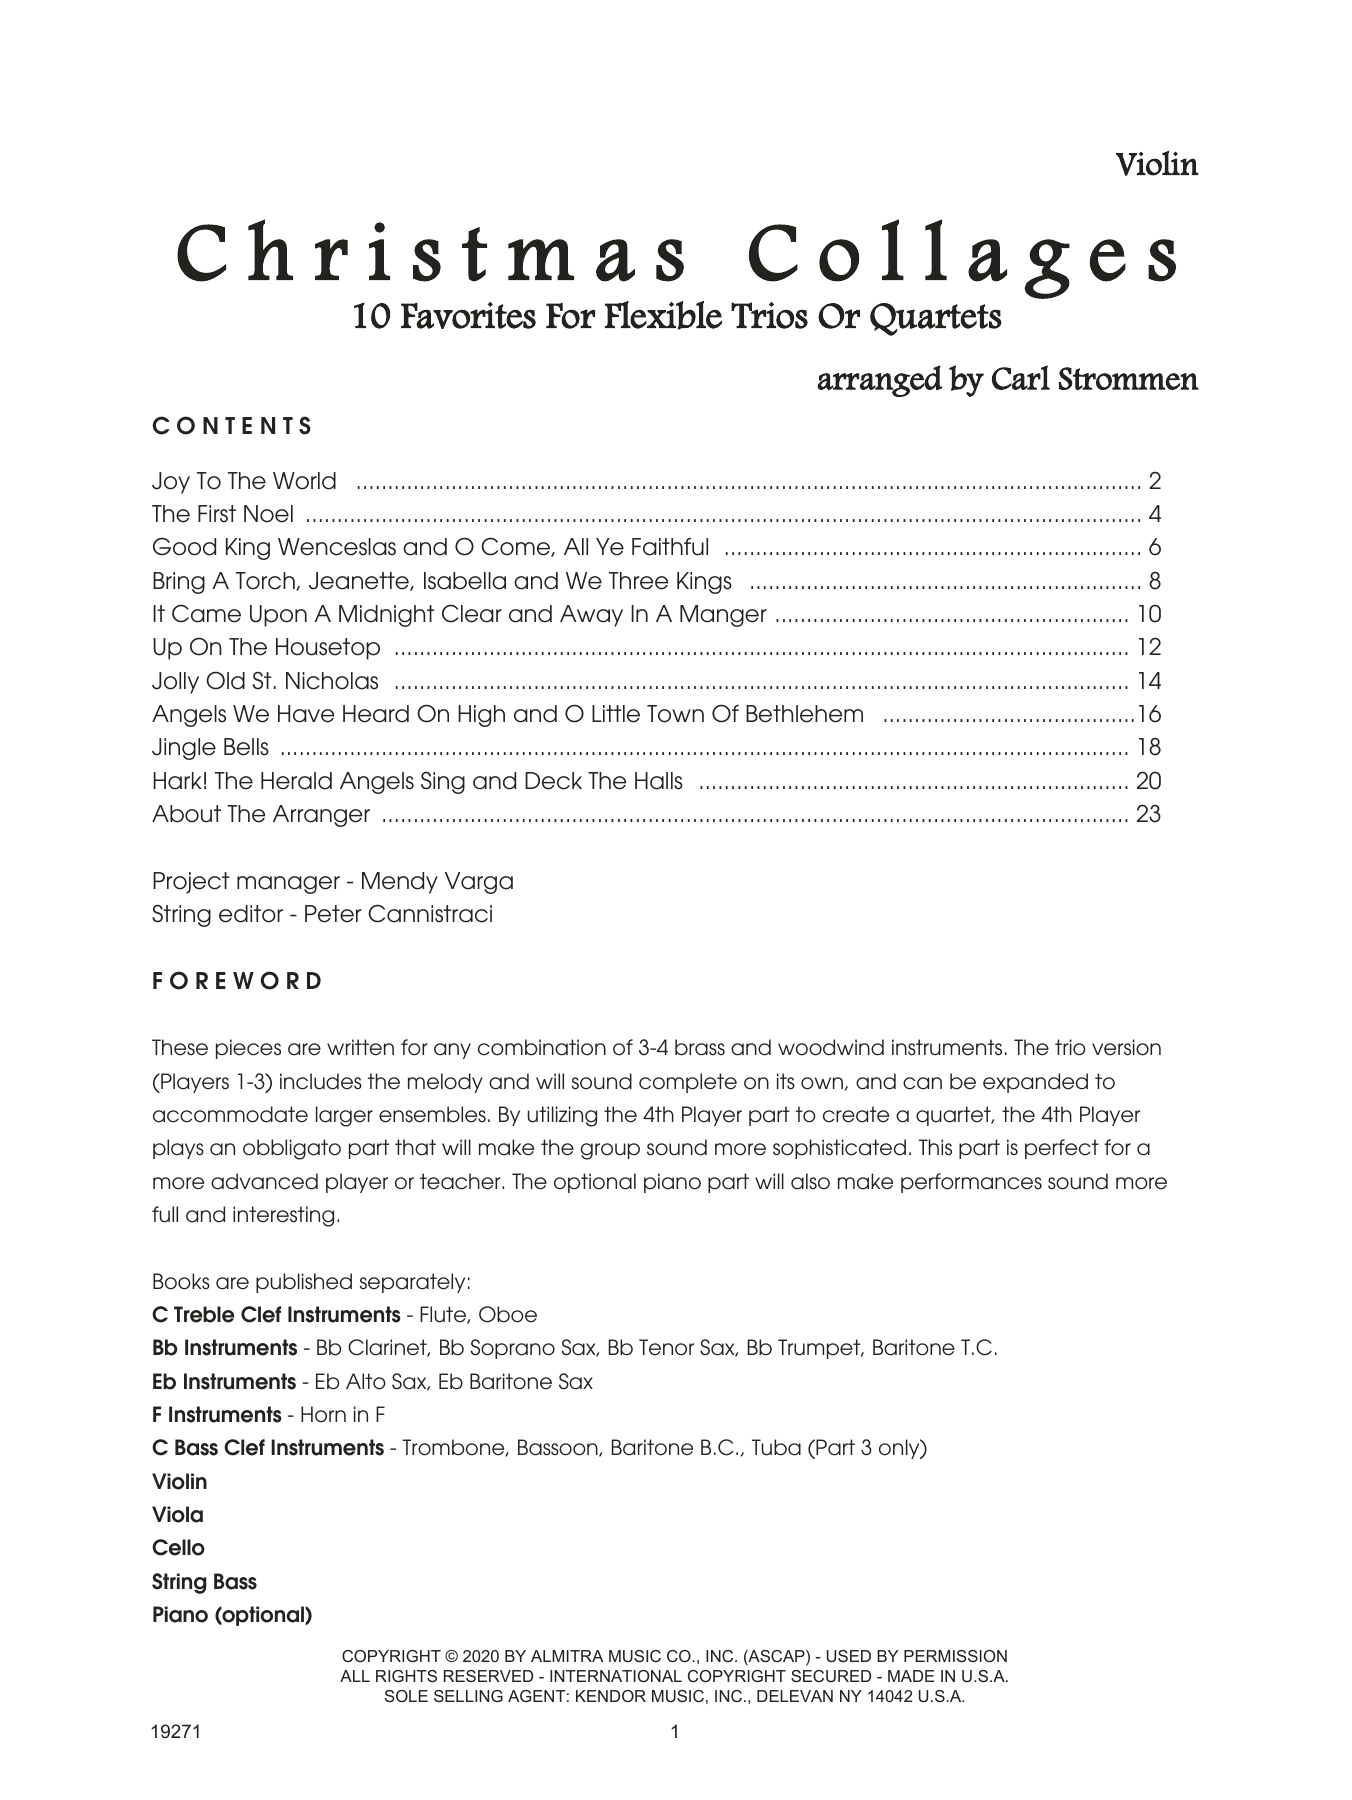 Christmas Collages - Violin (String Ensemble) von Carl Strommen